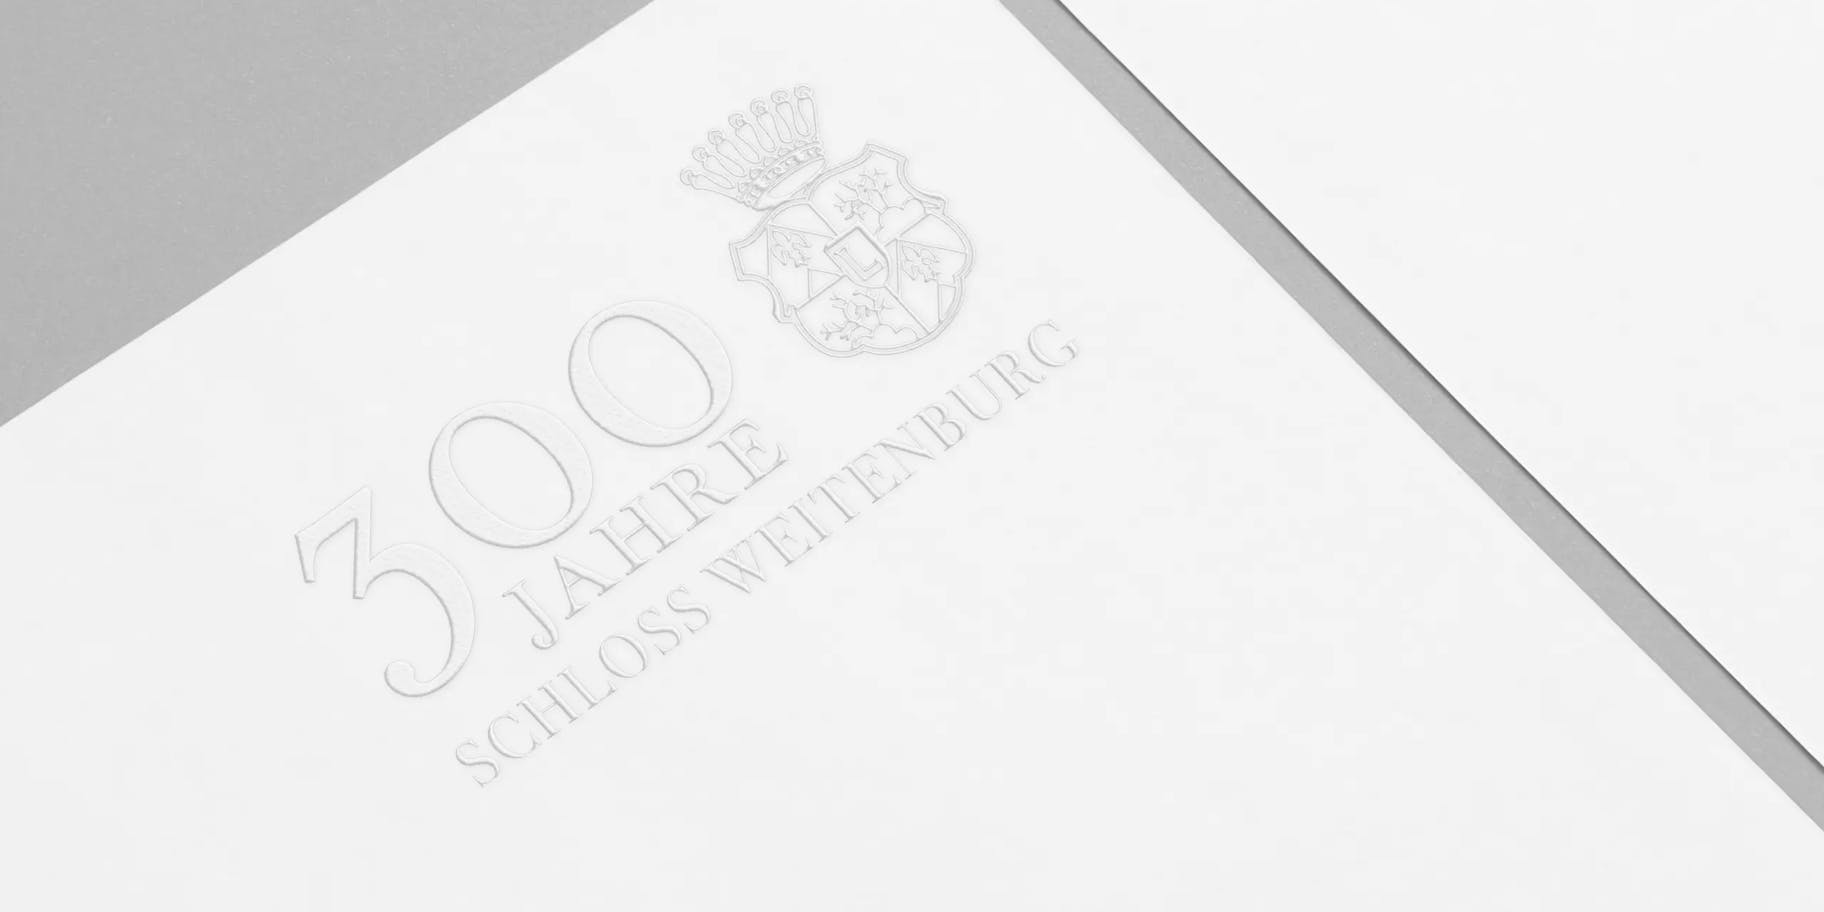 Weitenburg Castle’s 300th Anniversary